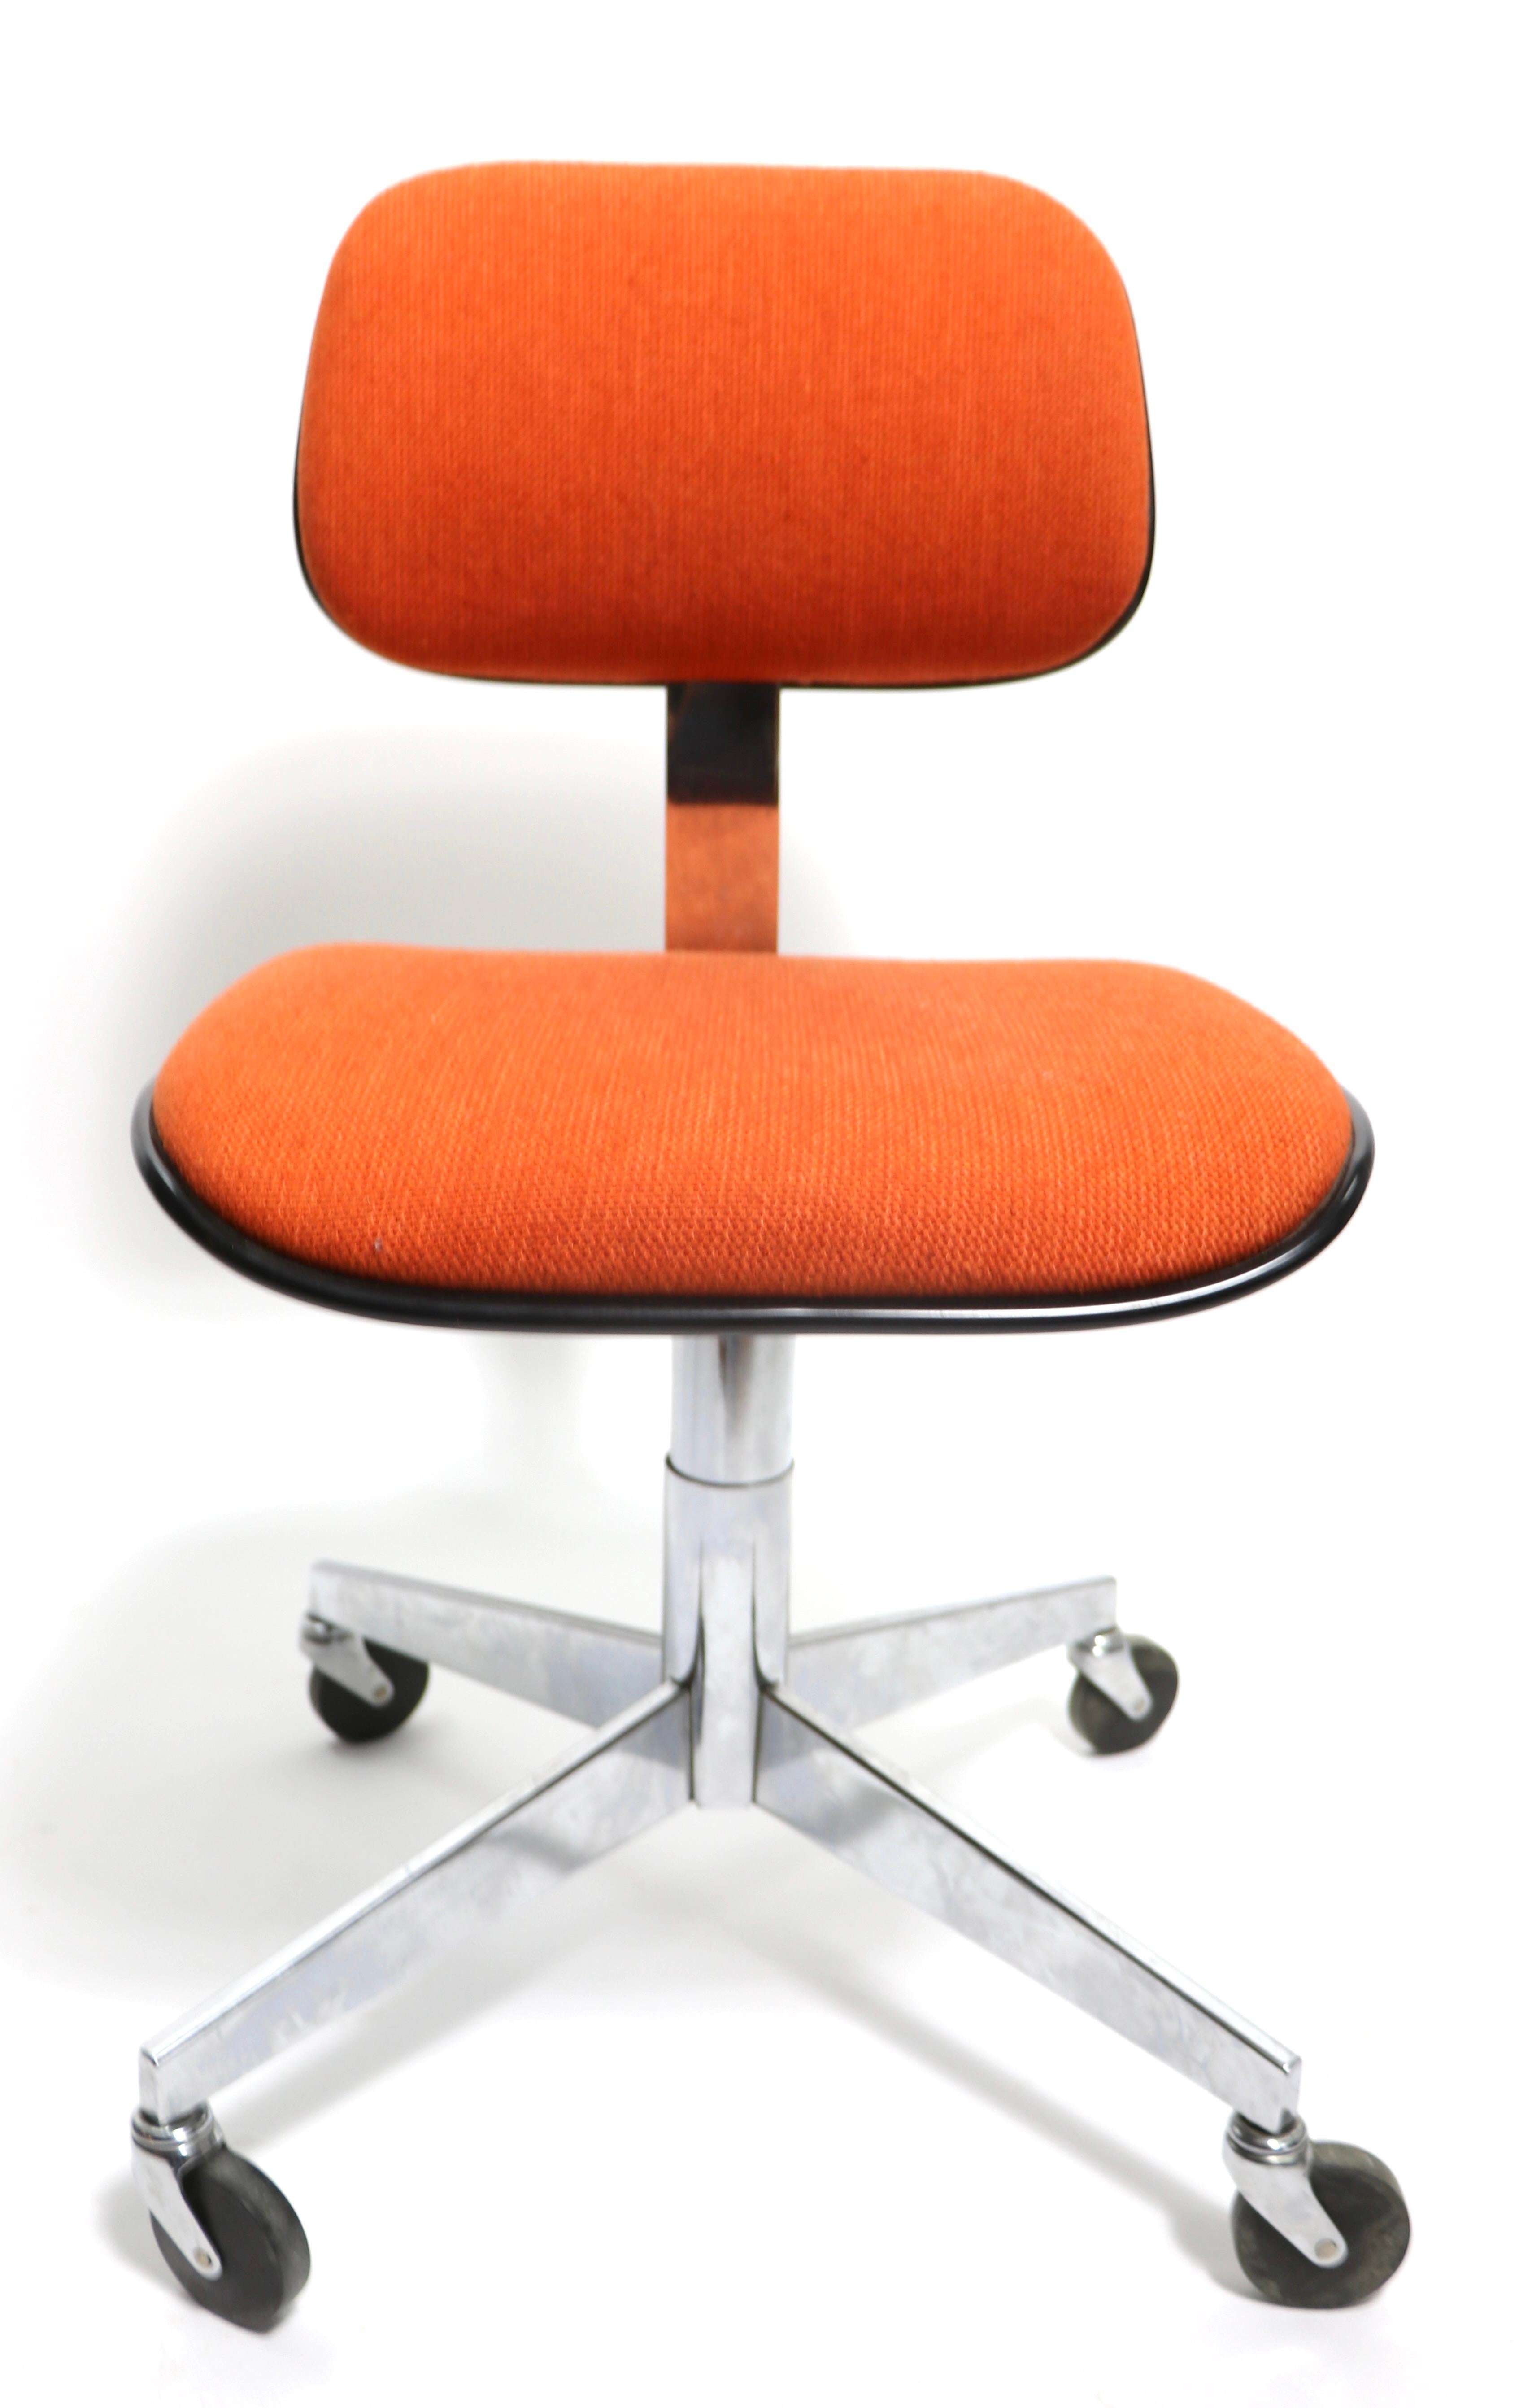 American Swivel Desk Chair by Steelcase